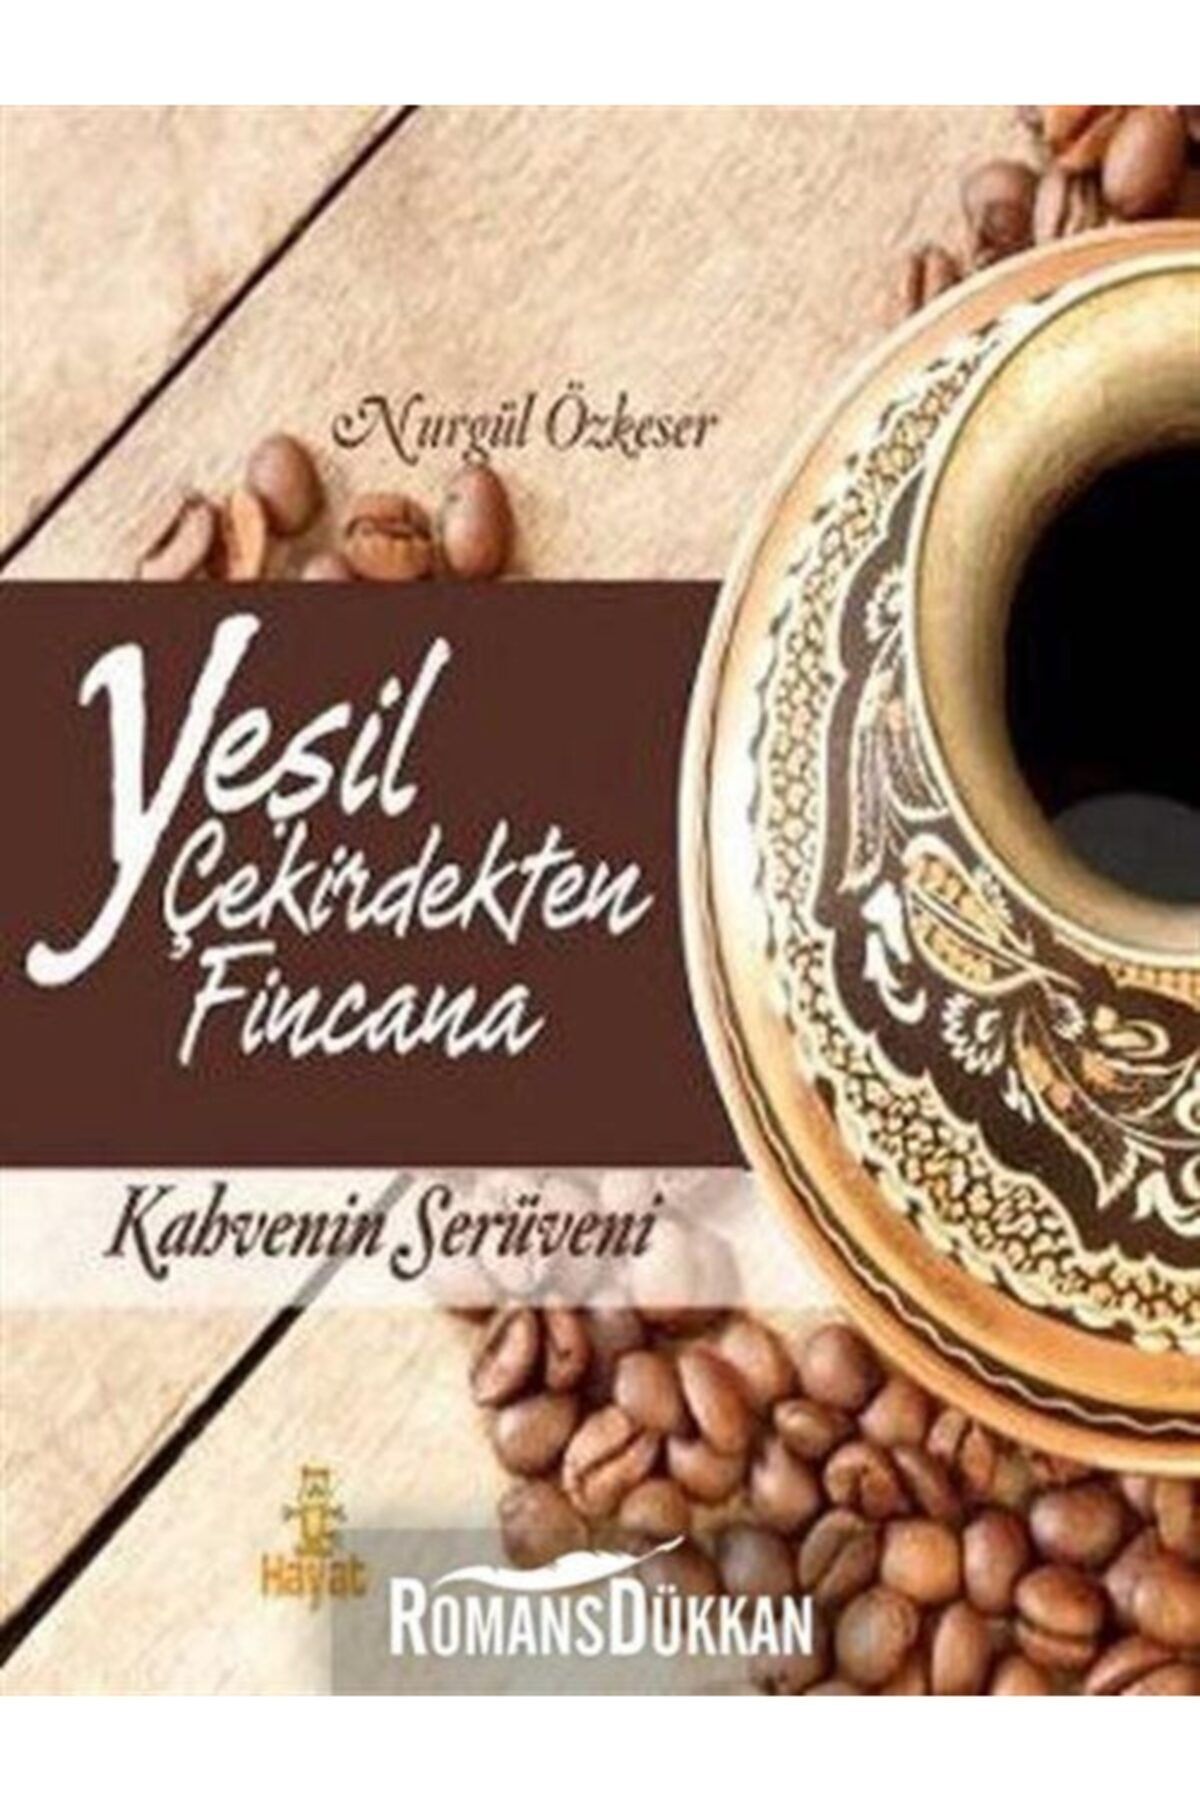 Hayat Yayınları Yeşil Çekirdekten Fincana & Kahvenin Serüveni